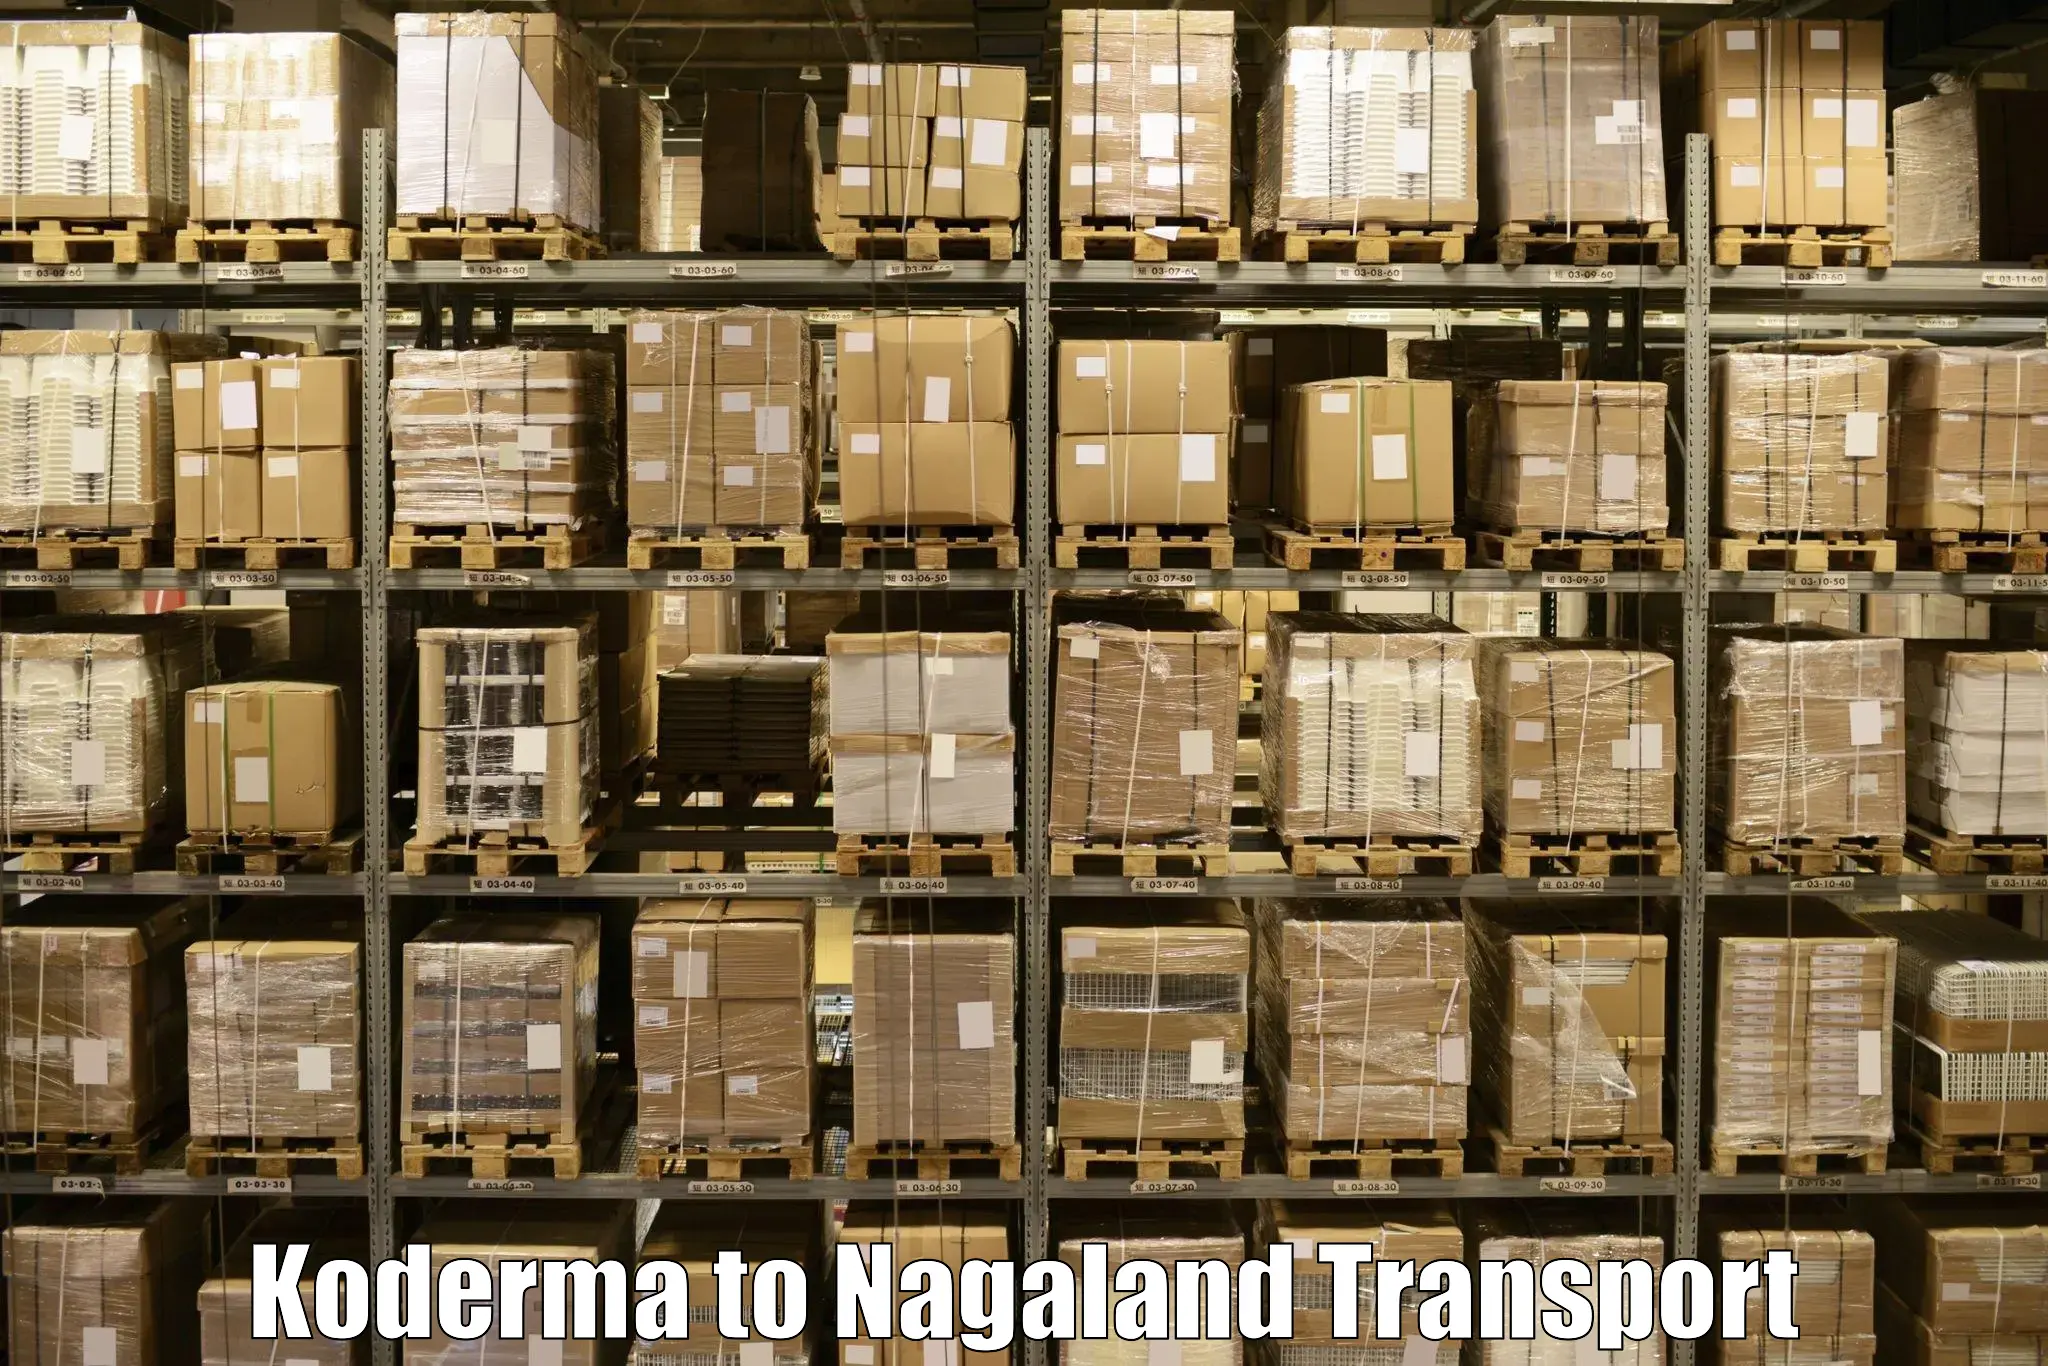 Nearest transport service Koderma to Longleng